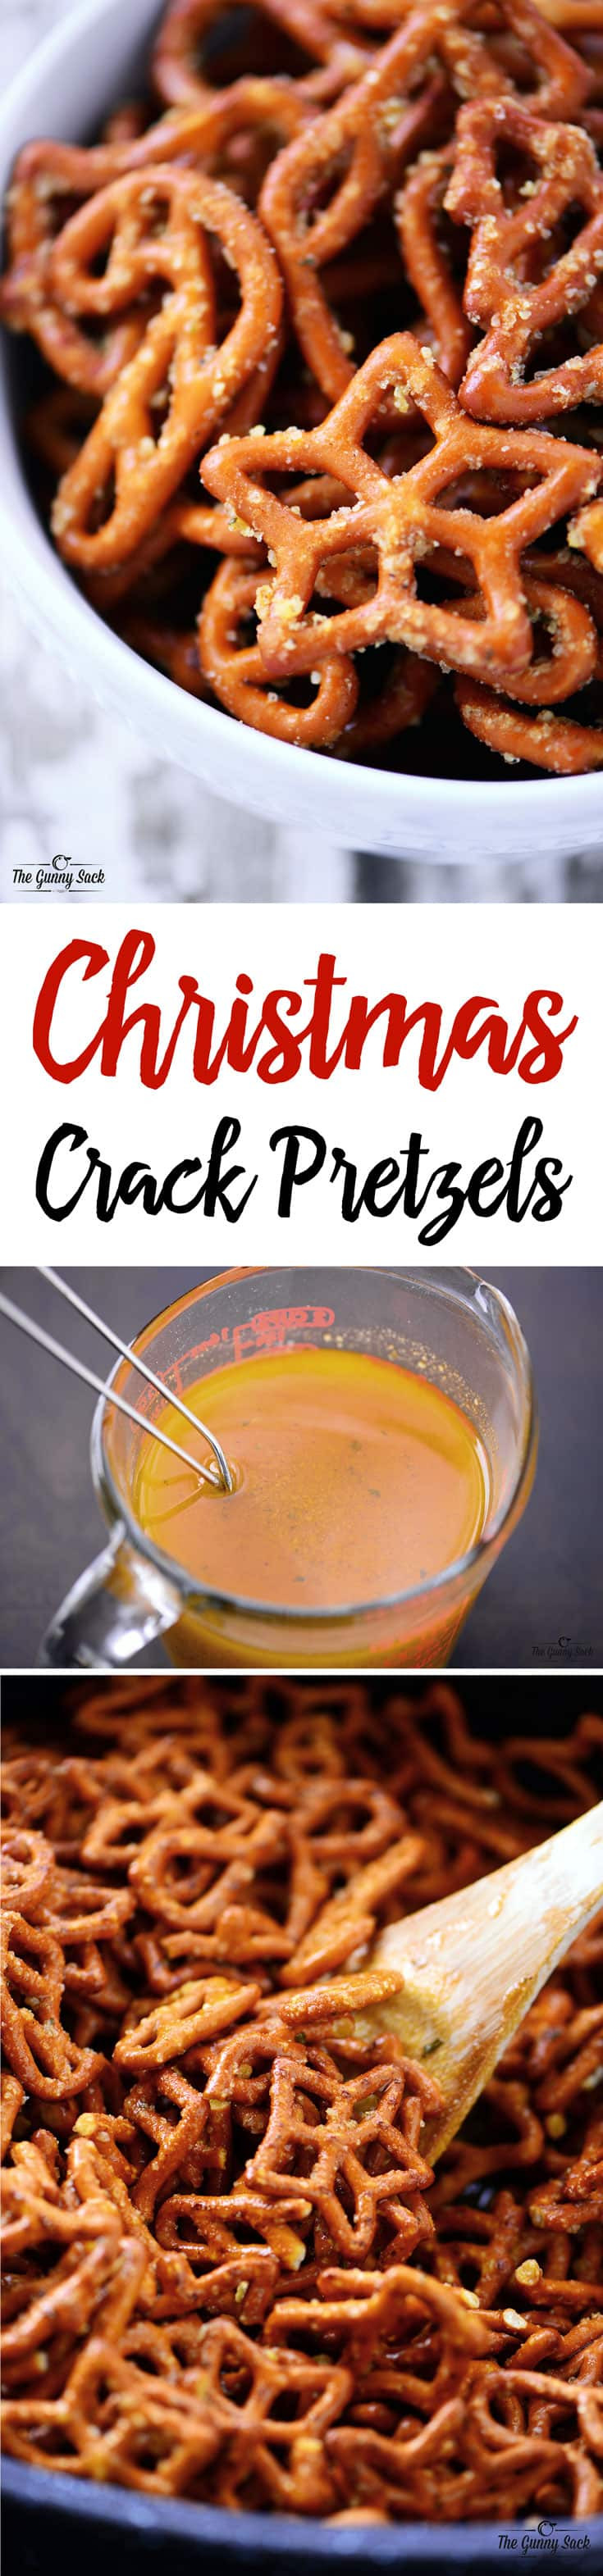 Christmas Crack With Pretzels
 Christmas Crack Pretzels Recipe The Gunny Sack